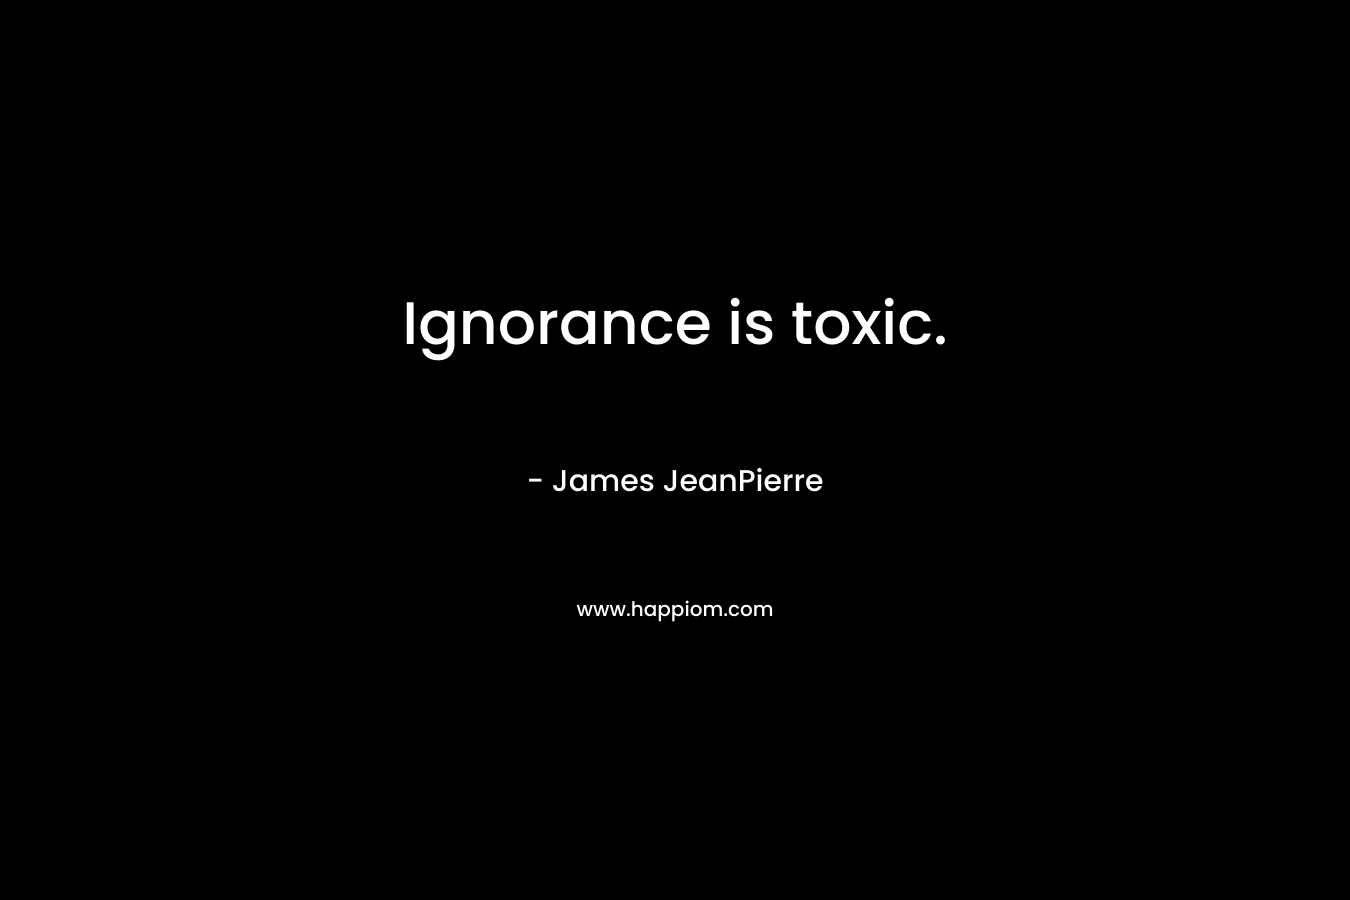 Ignorance is toxic.